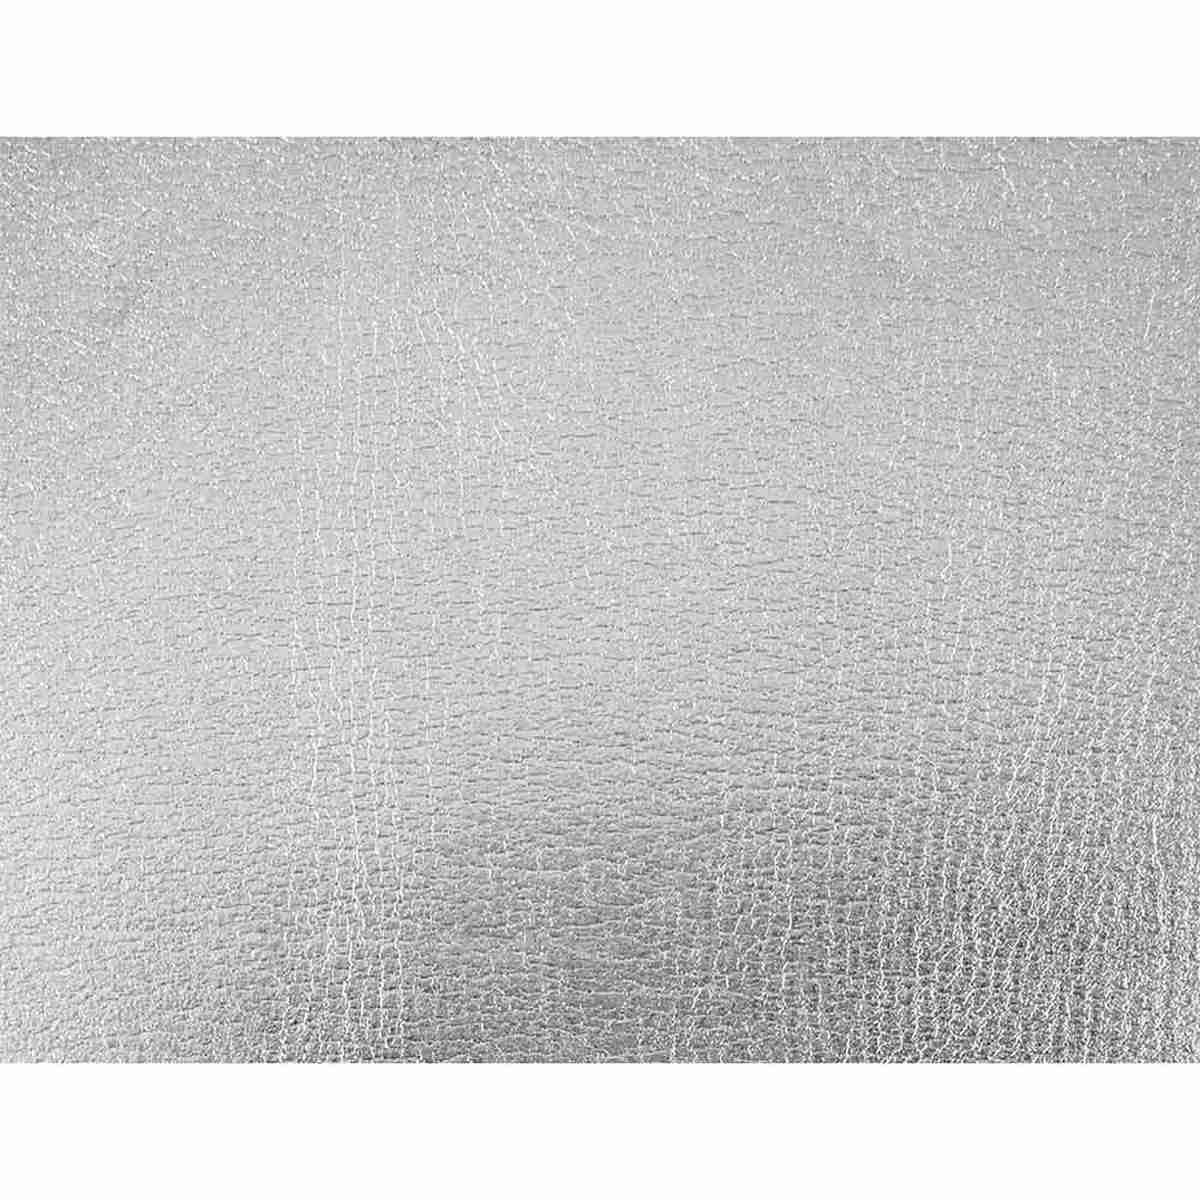 Niji - foglio in gomma espansa (eva) metalizzata  - 2 mm - a4 (21 x 29,7 cm)